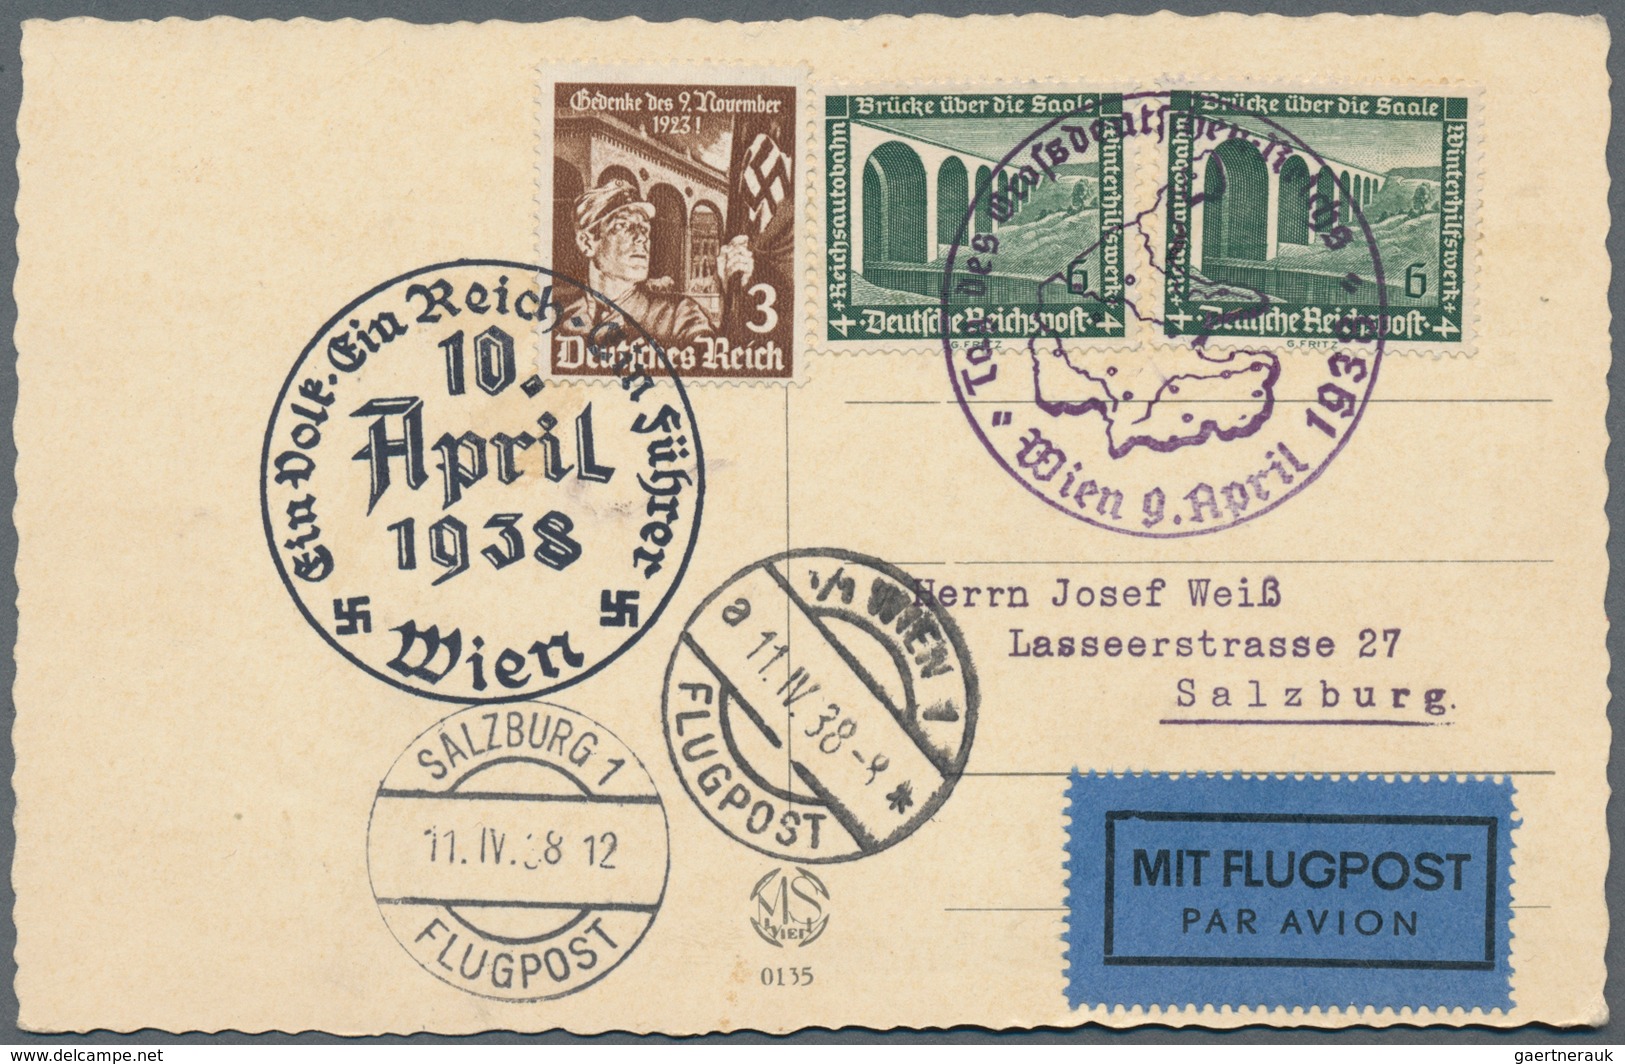 Deutsches Reich - 3. Reich: 1934/1944, nette Partie von ca. 60 Briefen und Karten, dabei Wagner-Fran